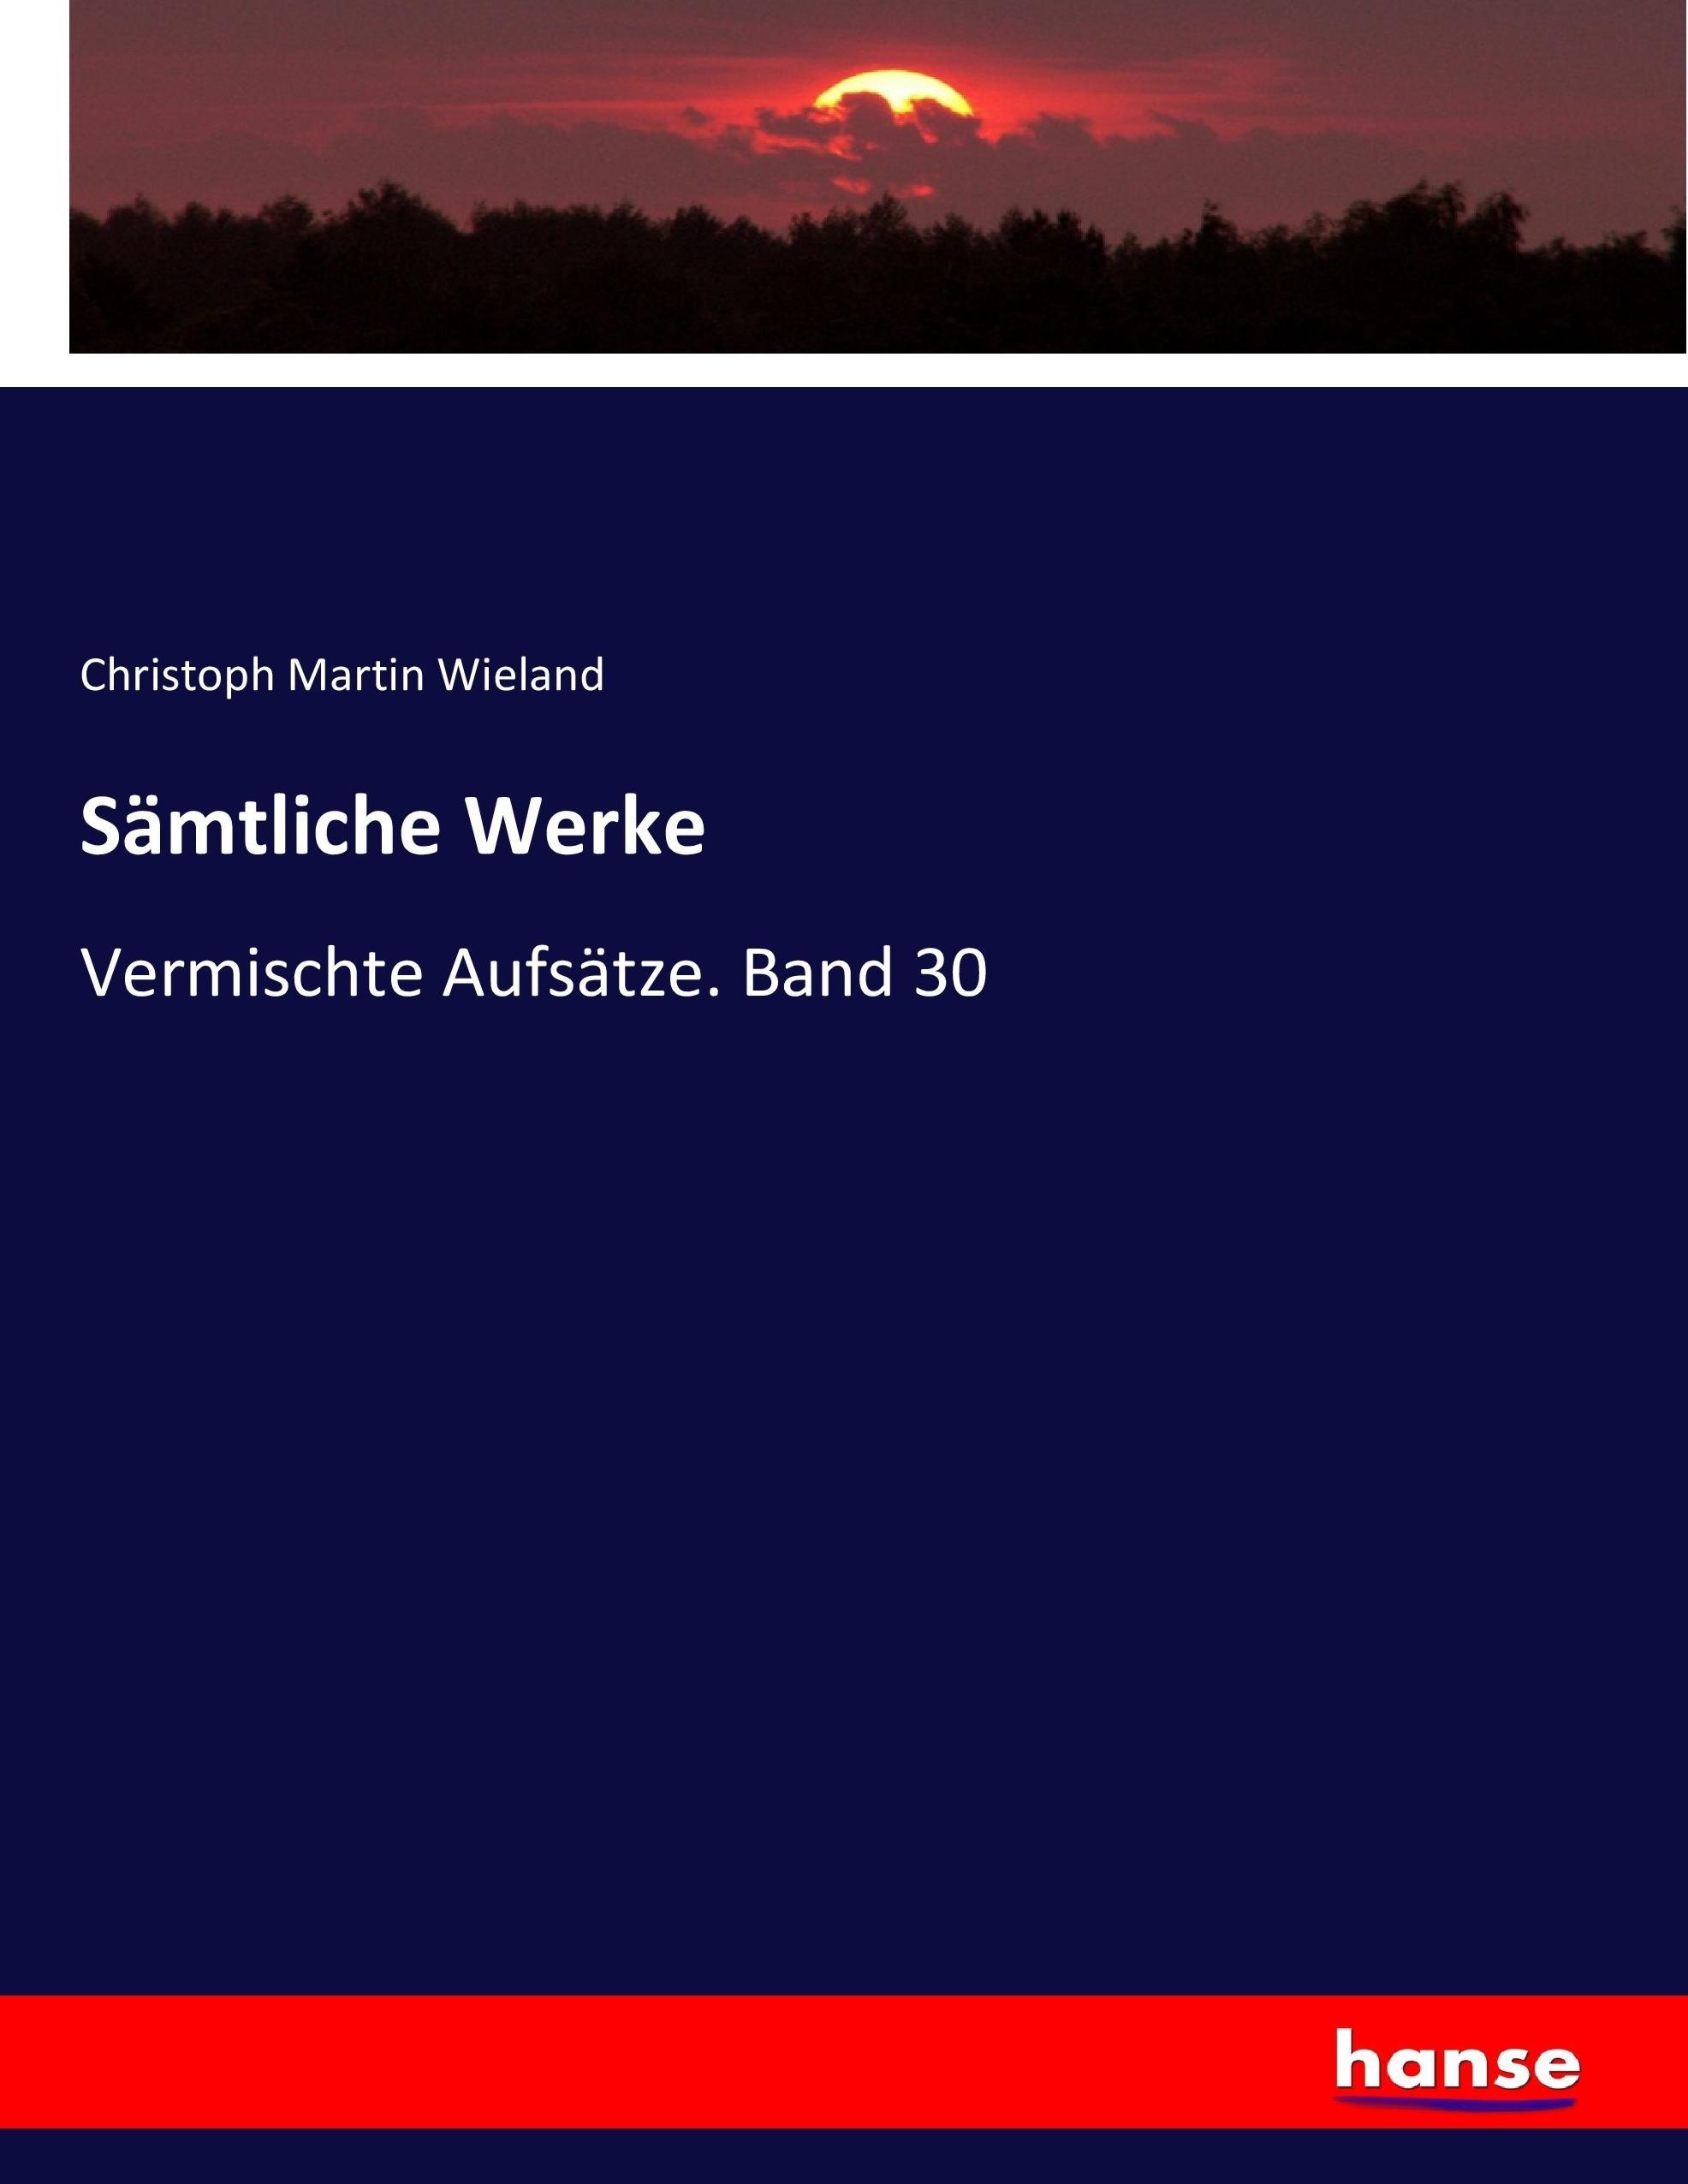 Sämtliche Werke / Vermischte Aufsätze. Band 30 / Christoph Martin Wieland / Taschenbuch / Paperback / 536 S. / Deutsch / 2017 / hansebooks / EAN 9783743699748 - Wieland, Christoph Martin